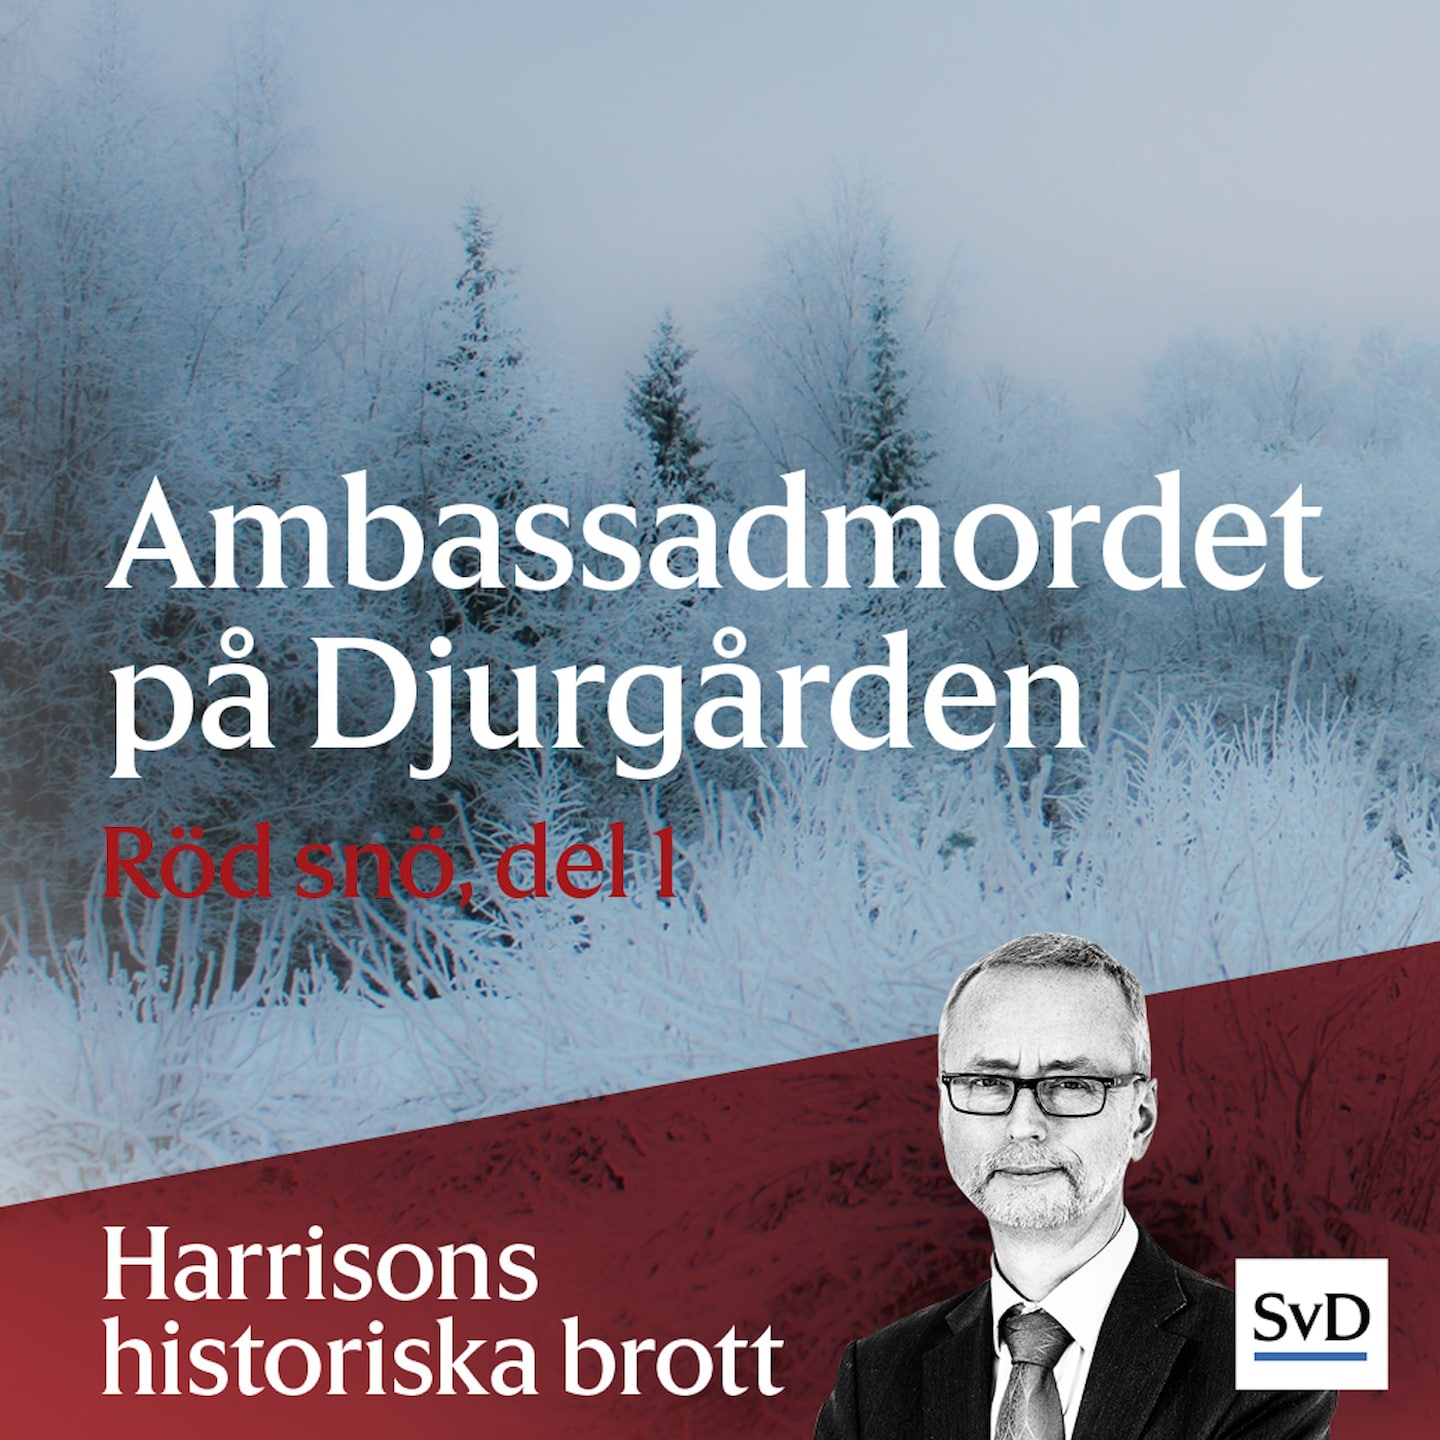 Ambassadmordet på Djurgården (Röd snö, del 1)